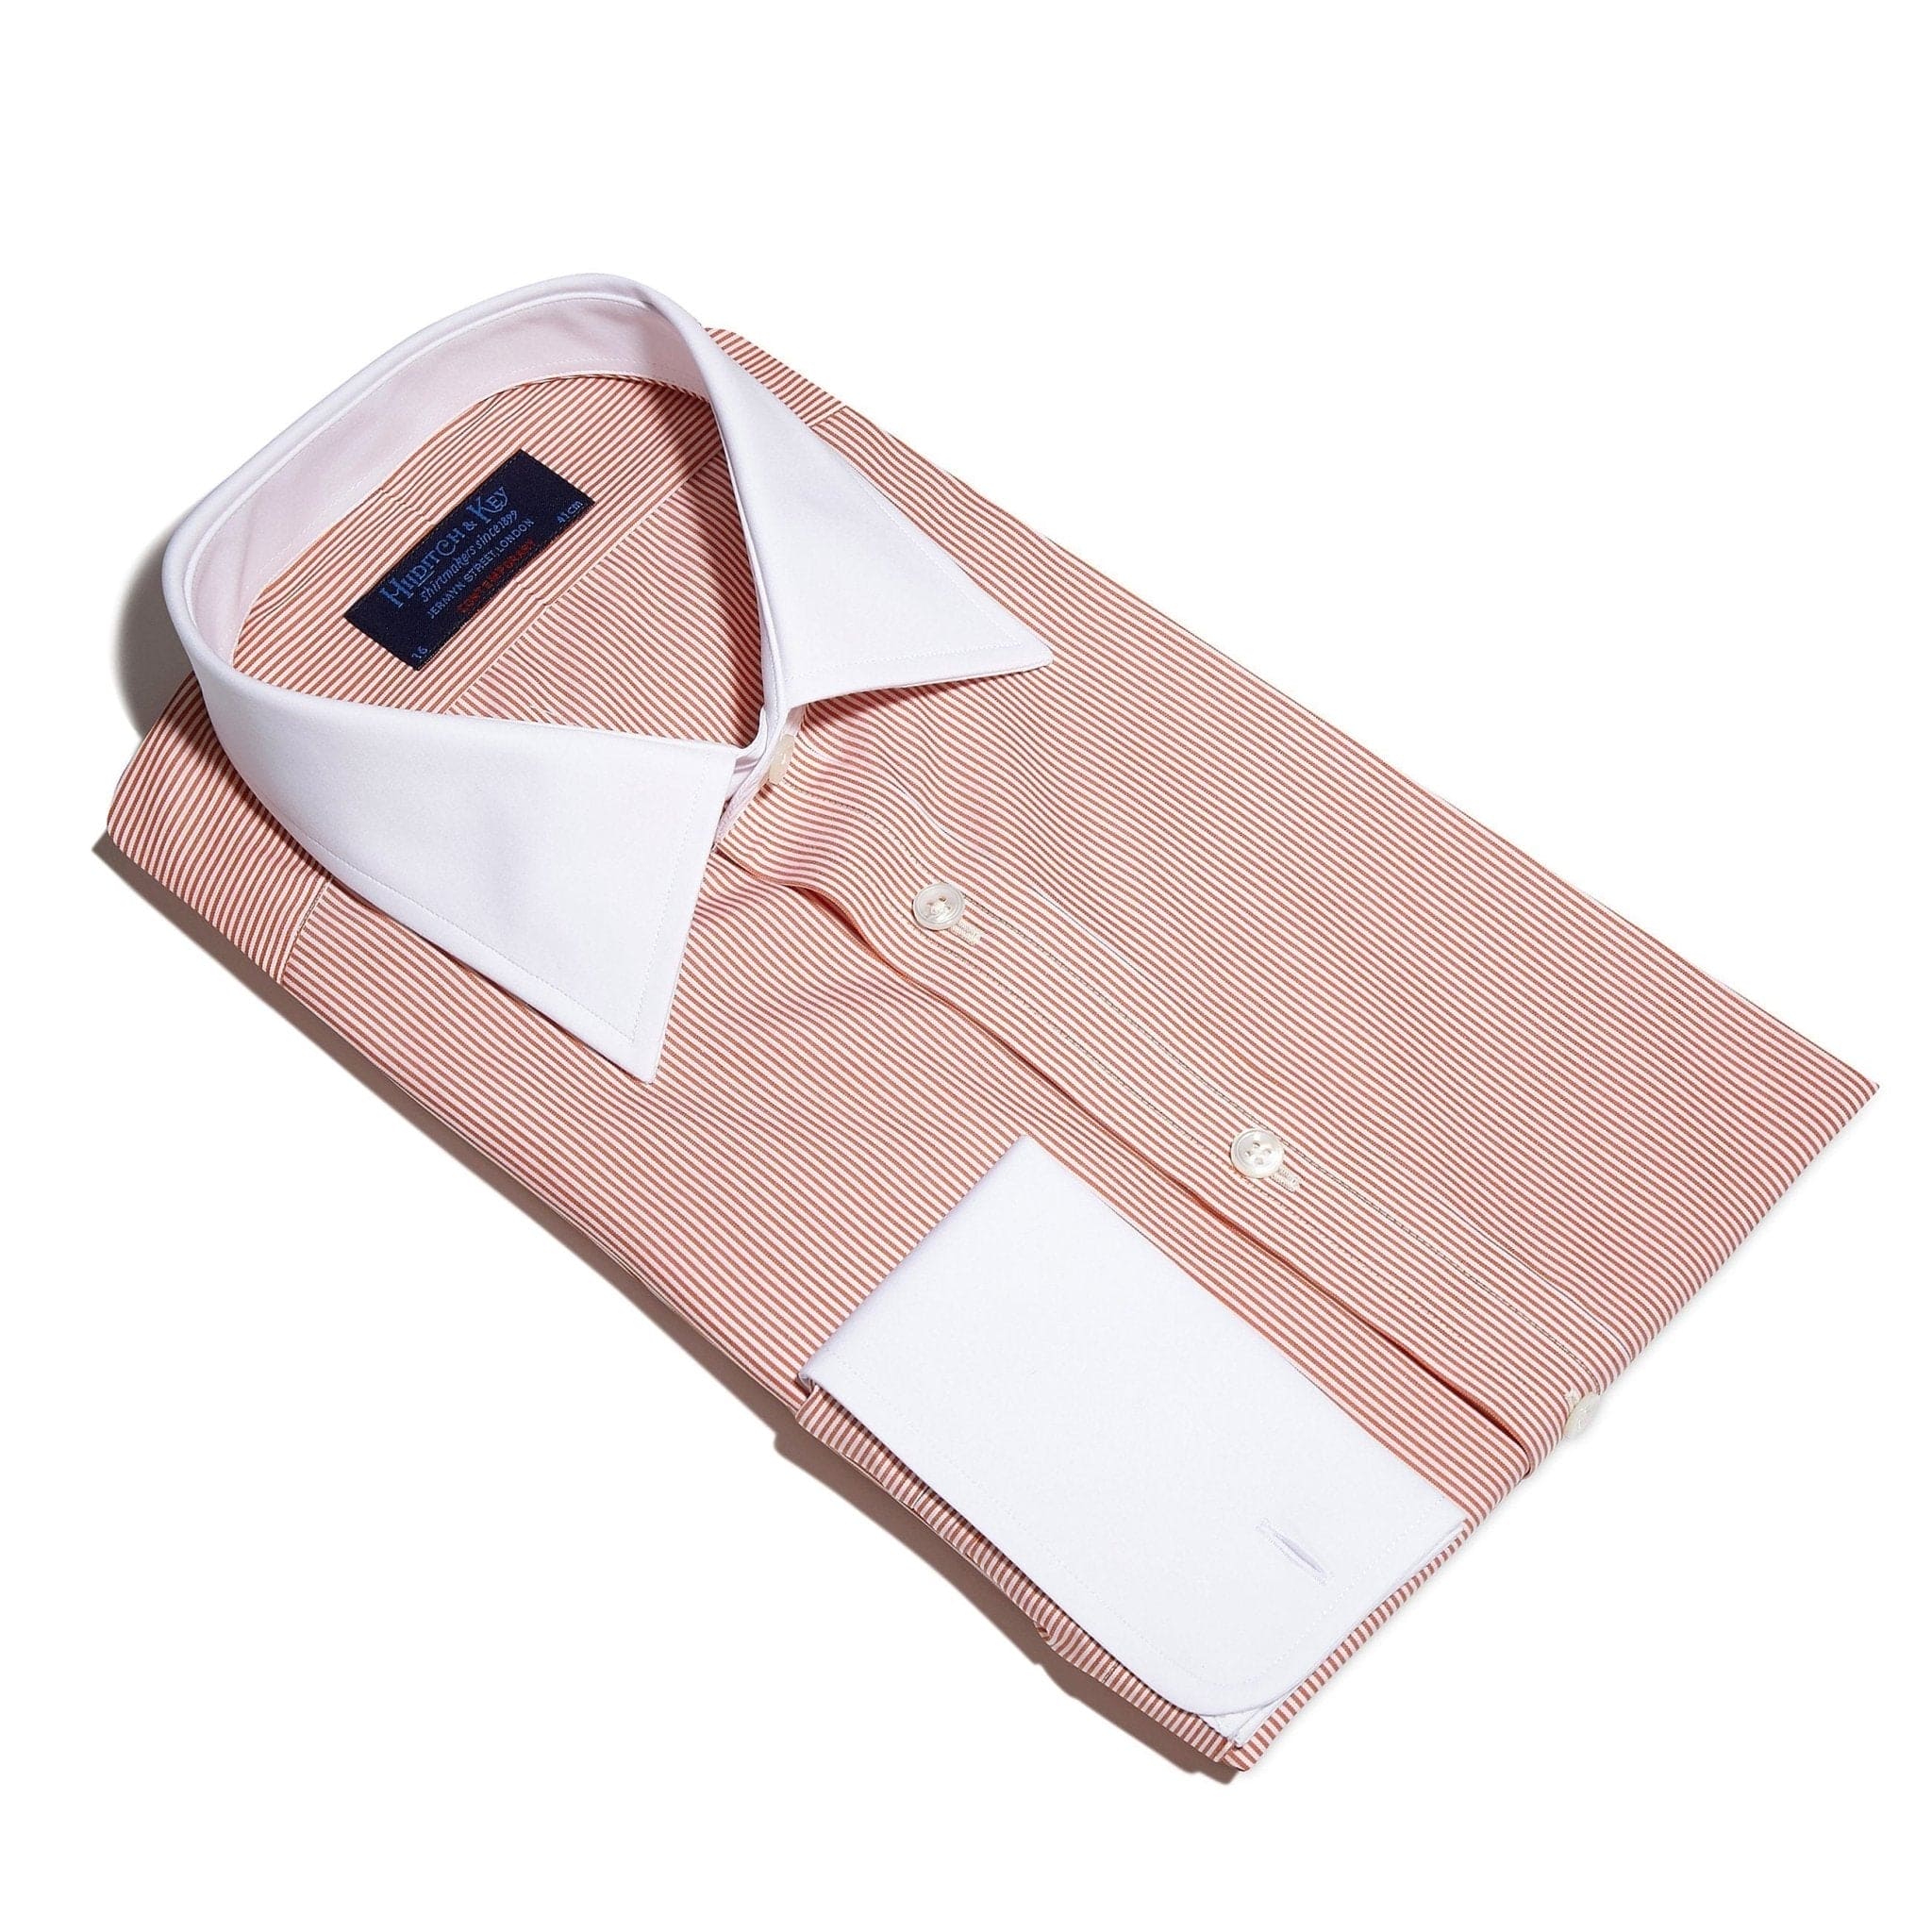 Contemporary Fit, White Classic Collar, White Double Cuff Shirt in a Orange & White Bengal Stripe Poplin Cotton